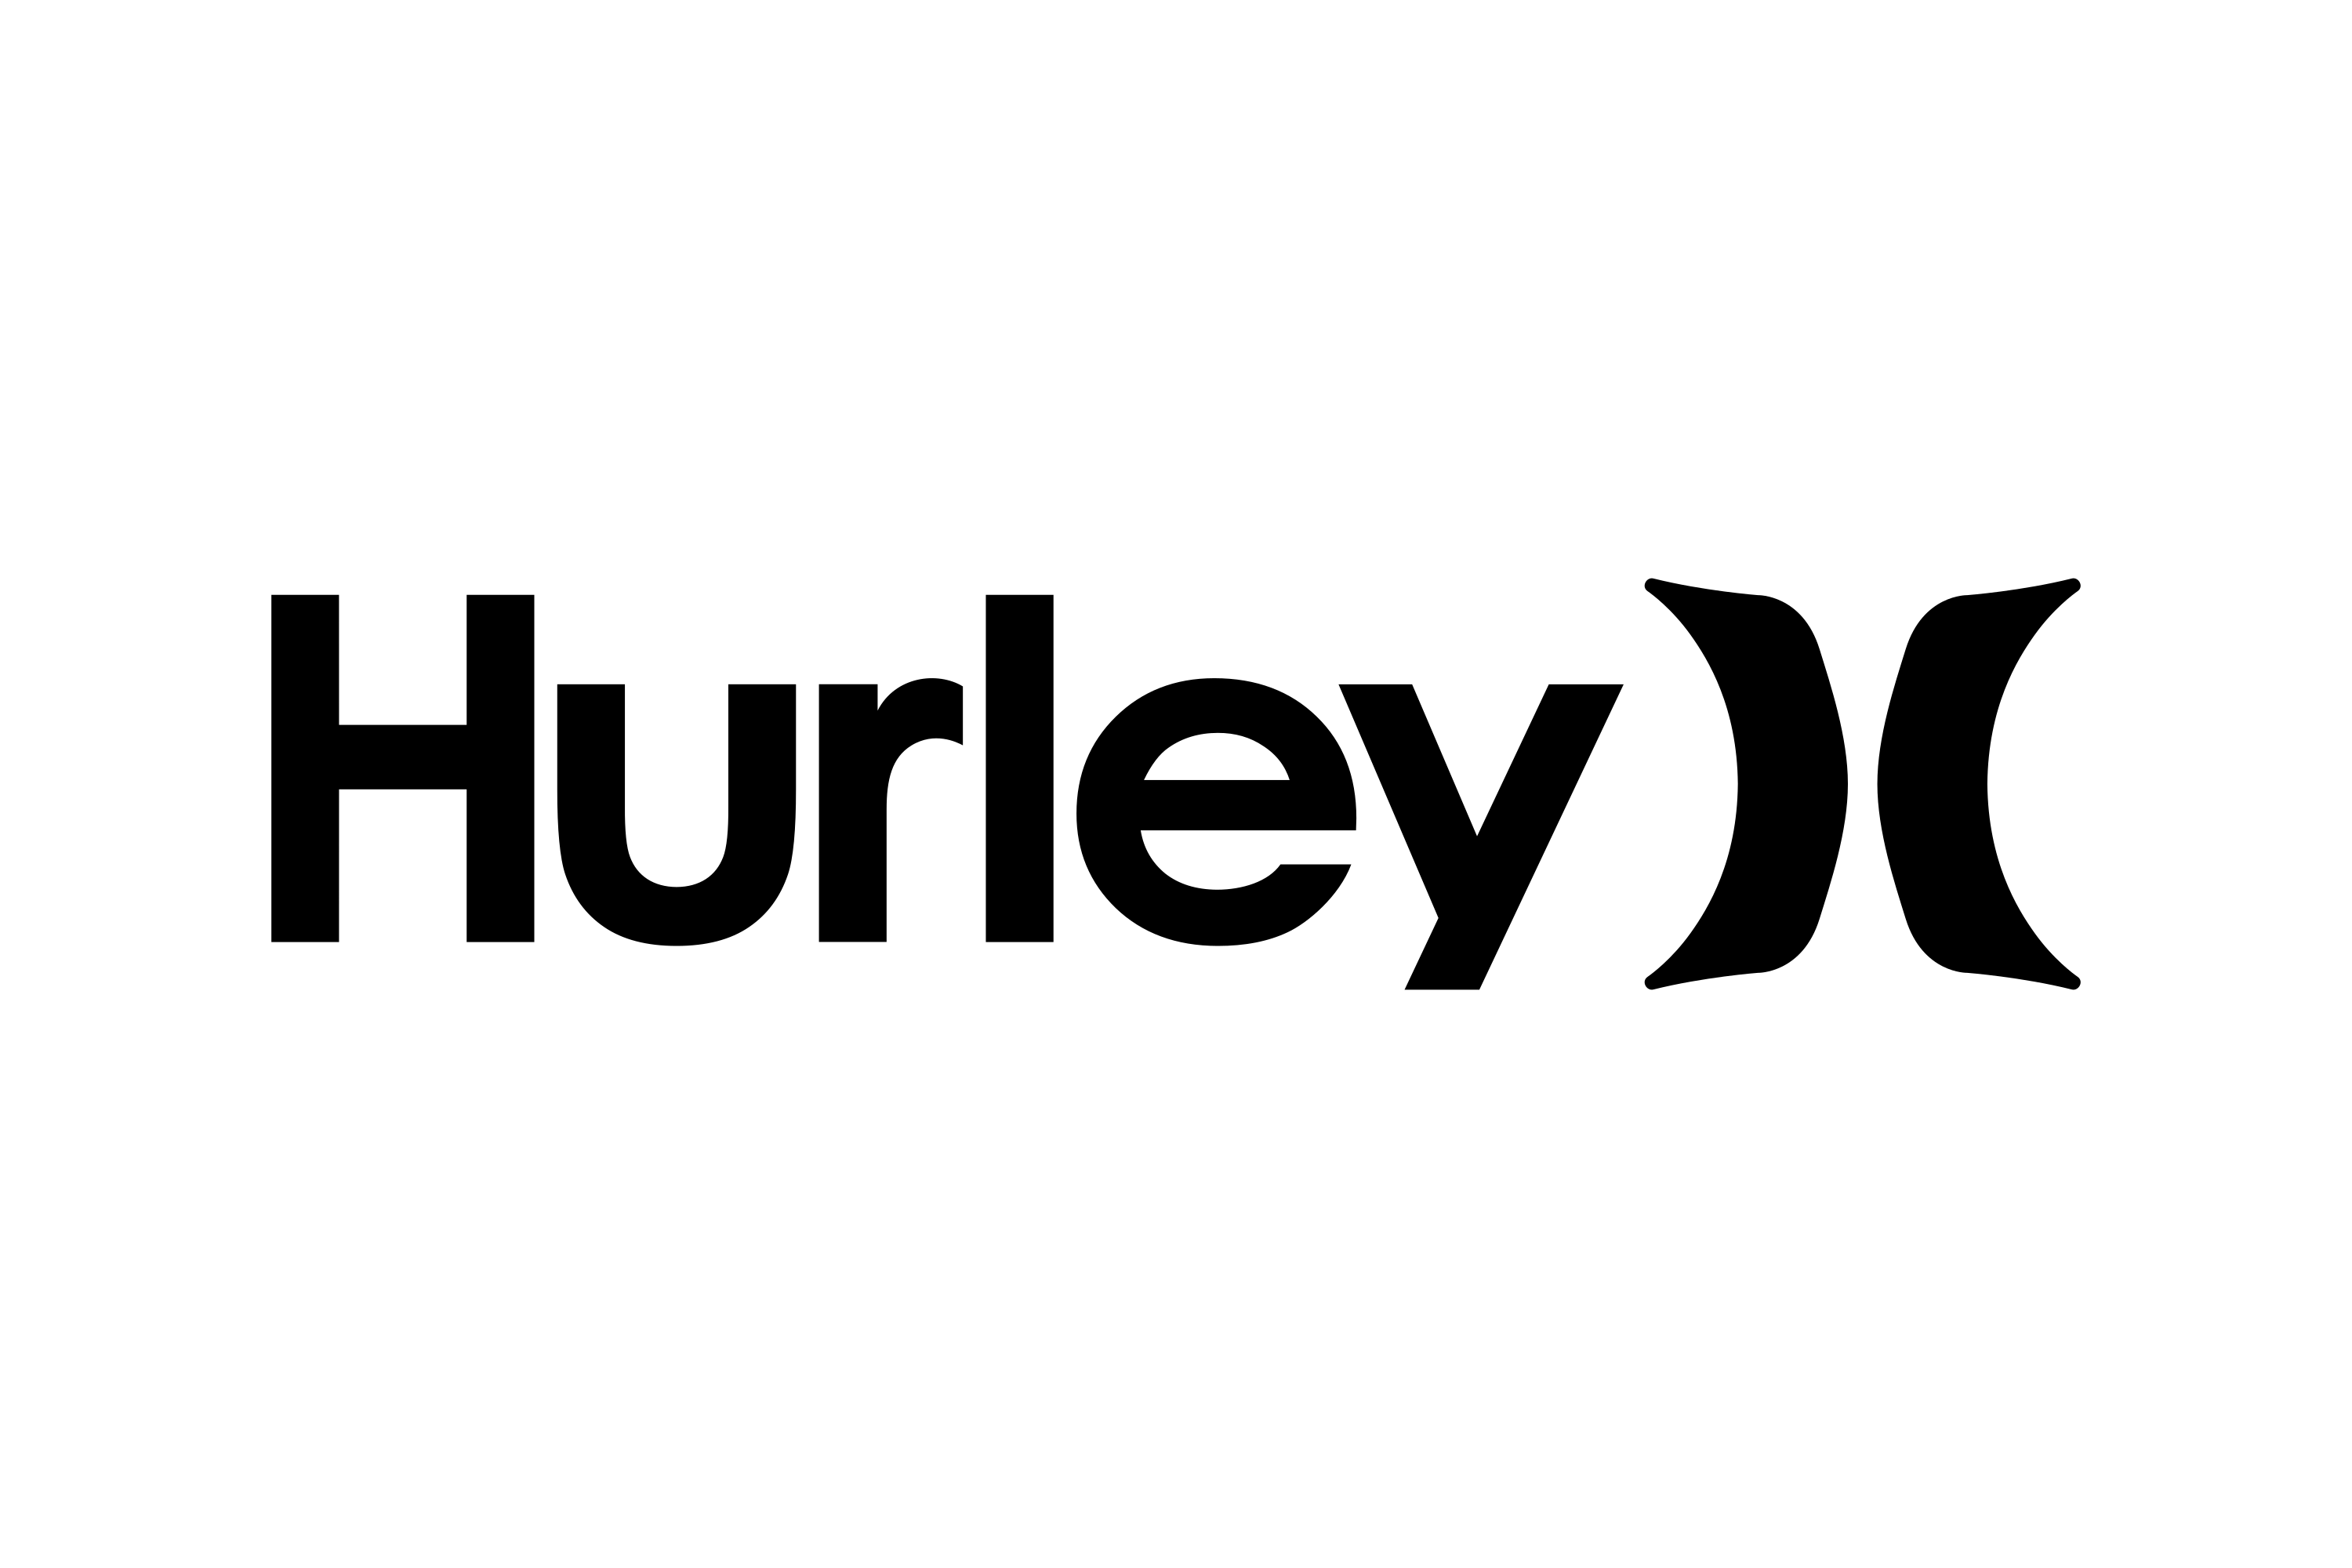 Download Hurley International Logo in SVG Vector or PNG File Format - Logo.wine